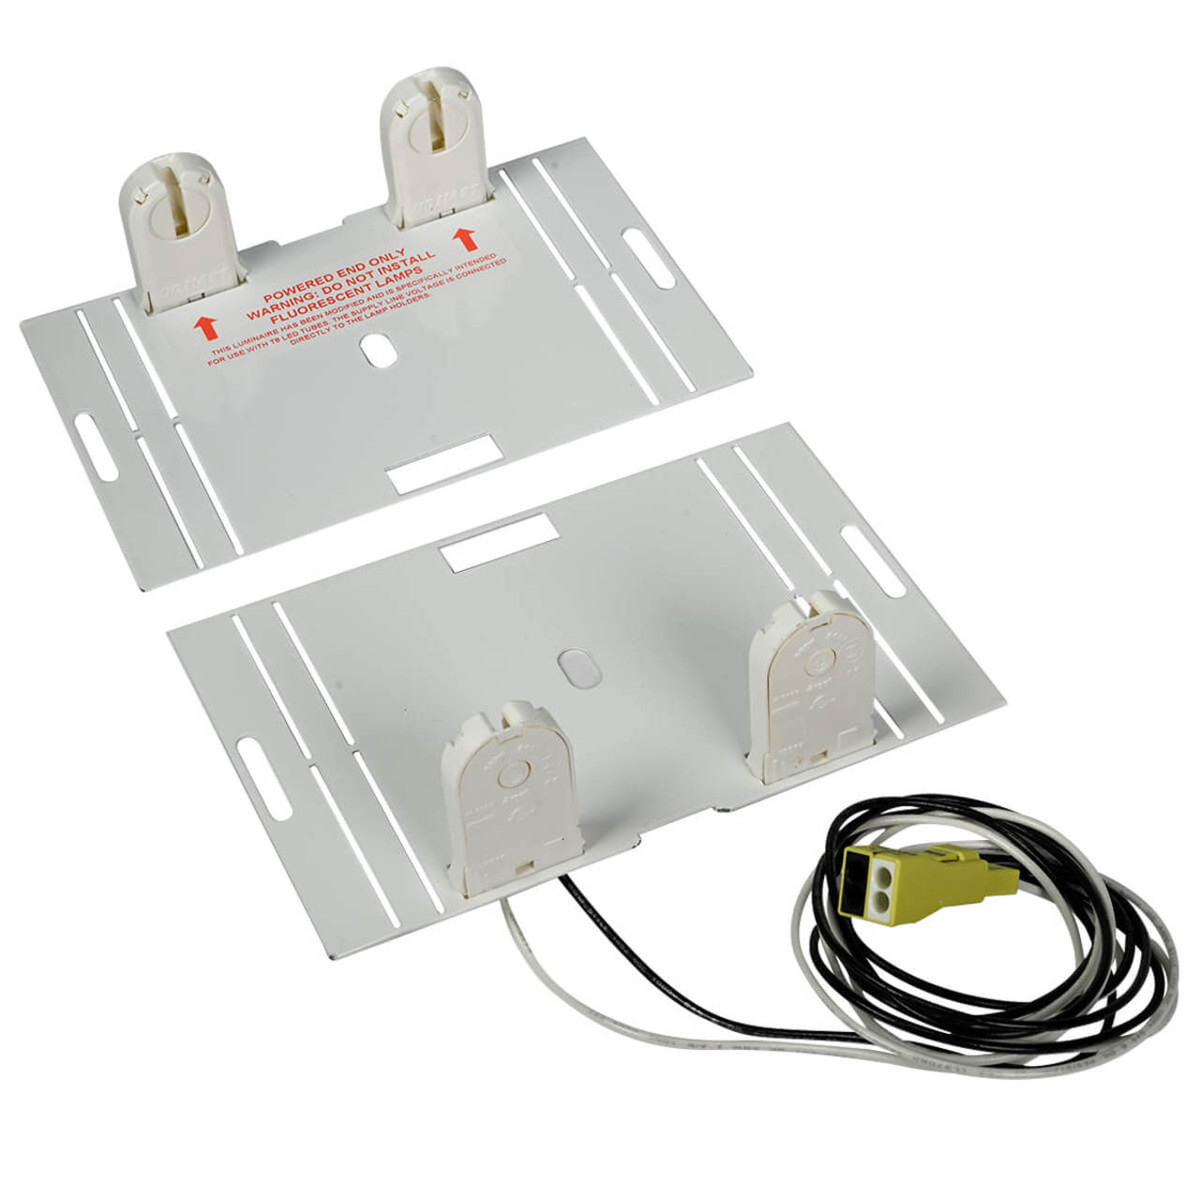 persoonlijkheid bevestig alstublieft hooi Epco 4' 2-Lamp Pre-Wired Fluorescent to LED T8 Retrofit Kit